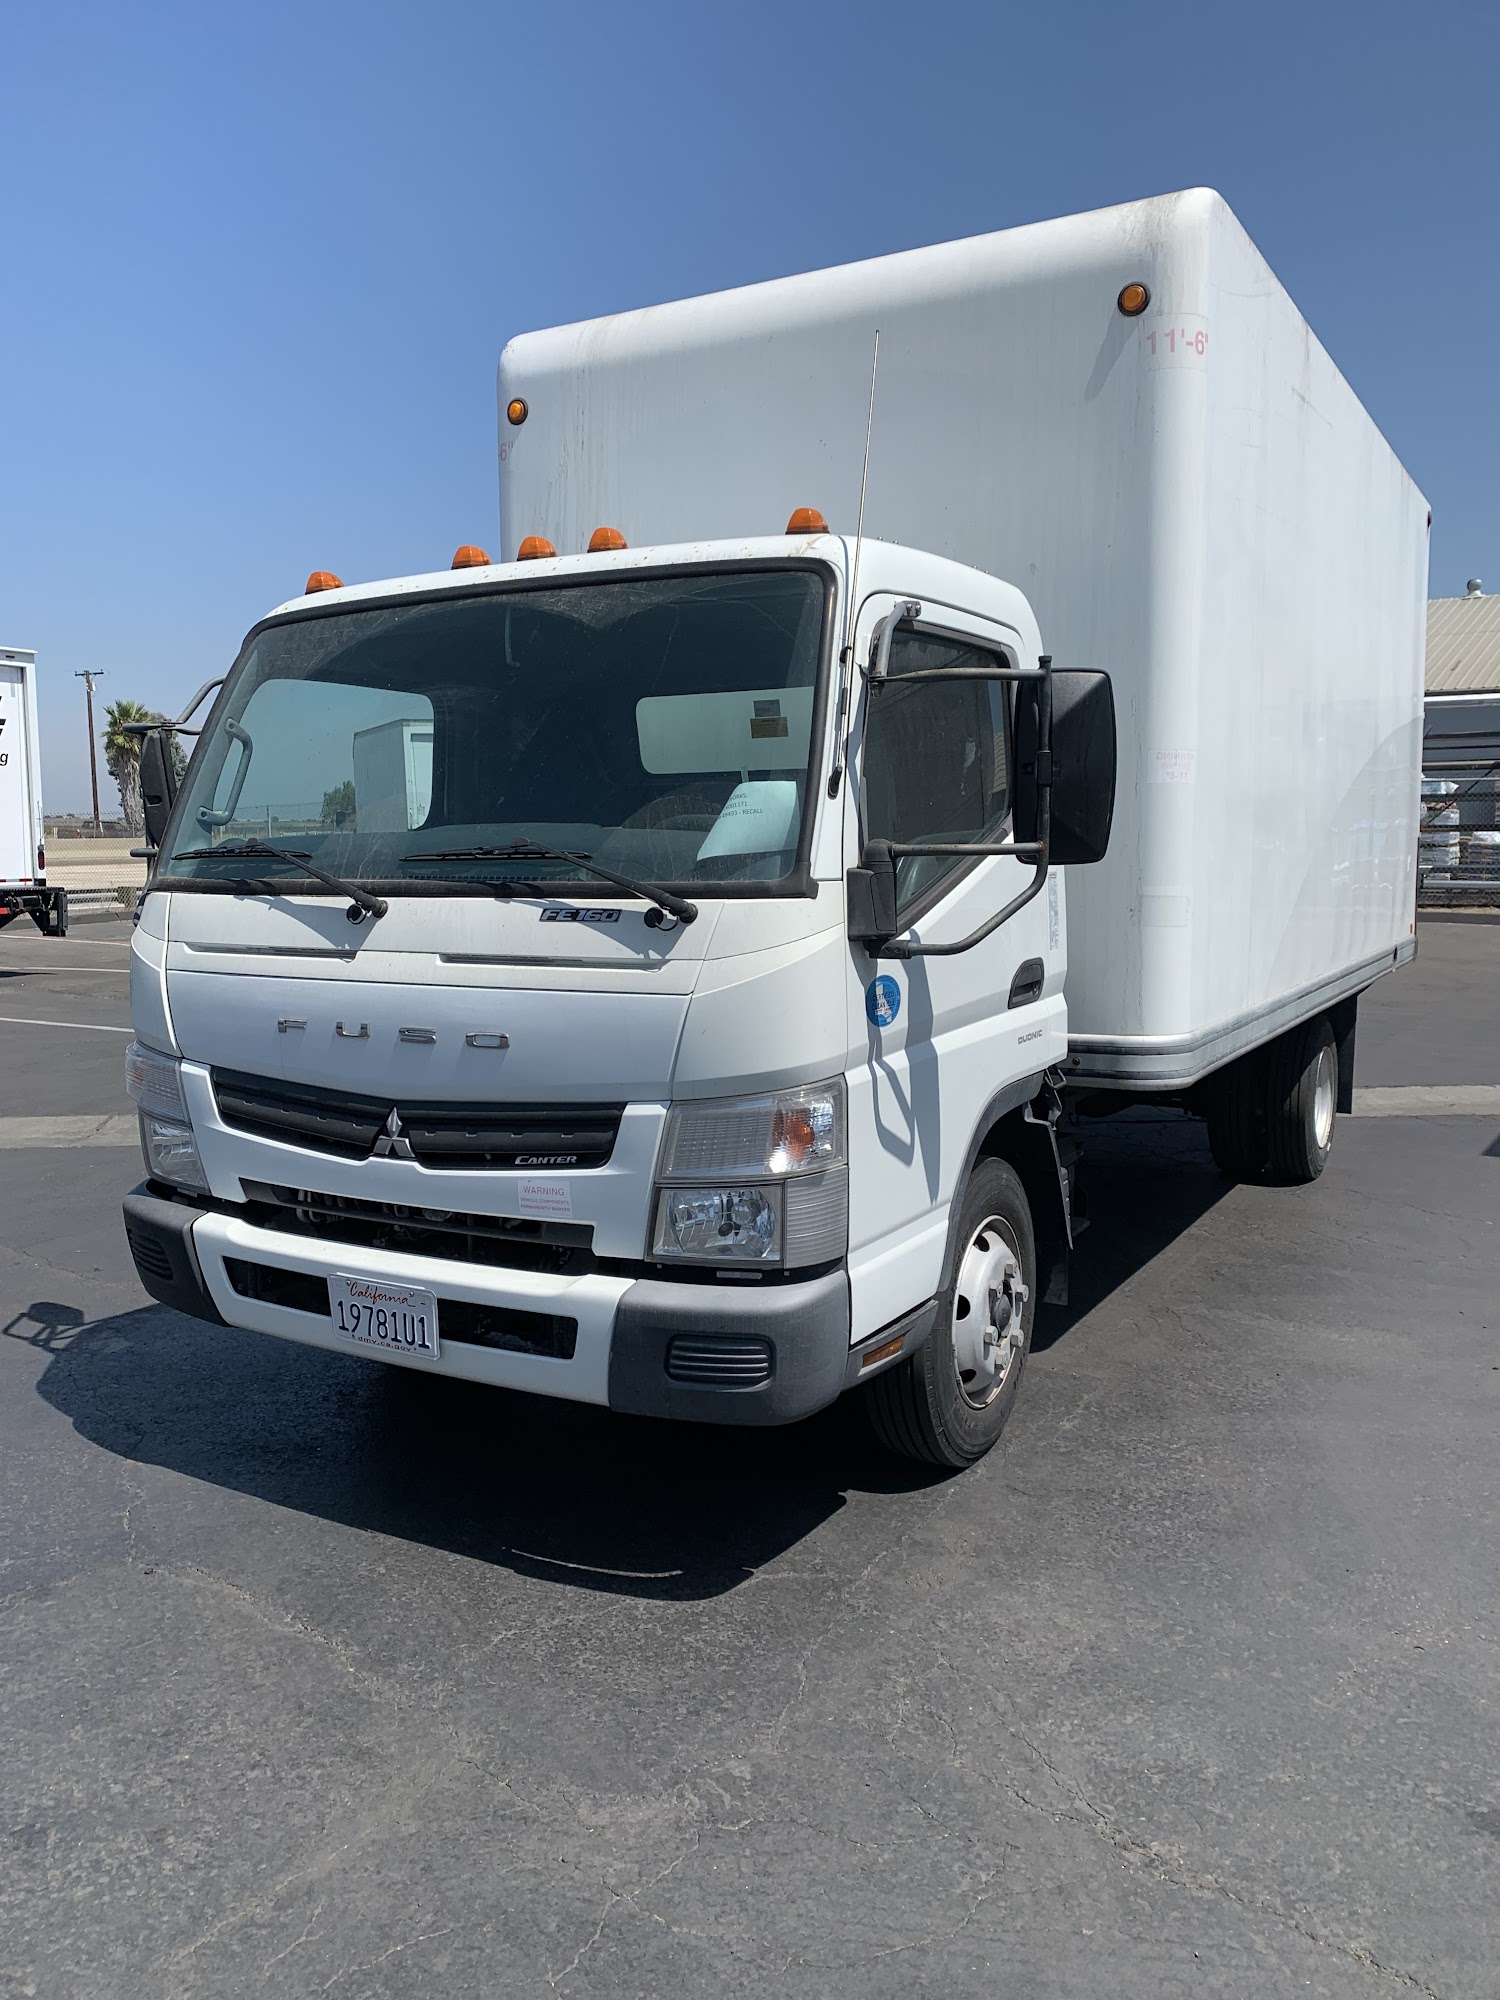 Kearny Mesa Truck Center